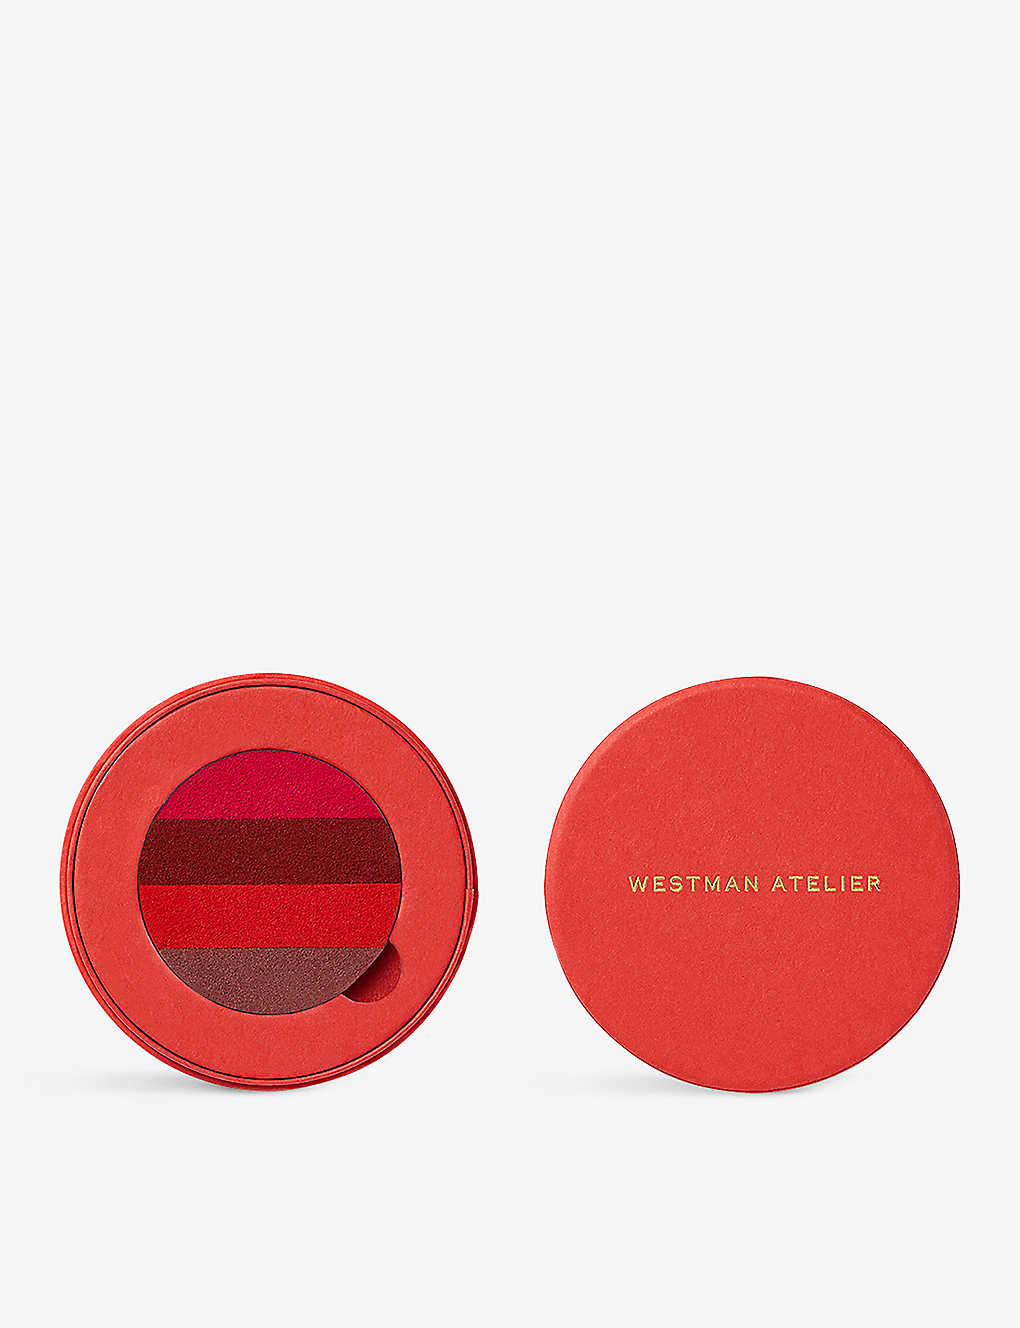 Westman Atelier Les Rouges Les Nudes Lip Suede Lip Colour 4.8g